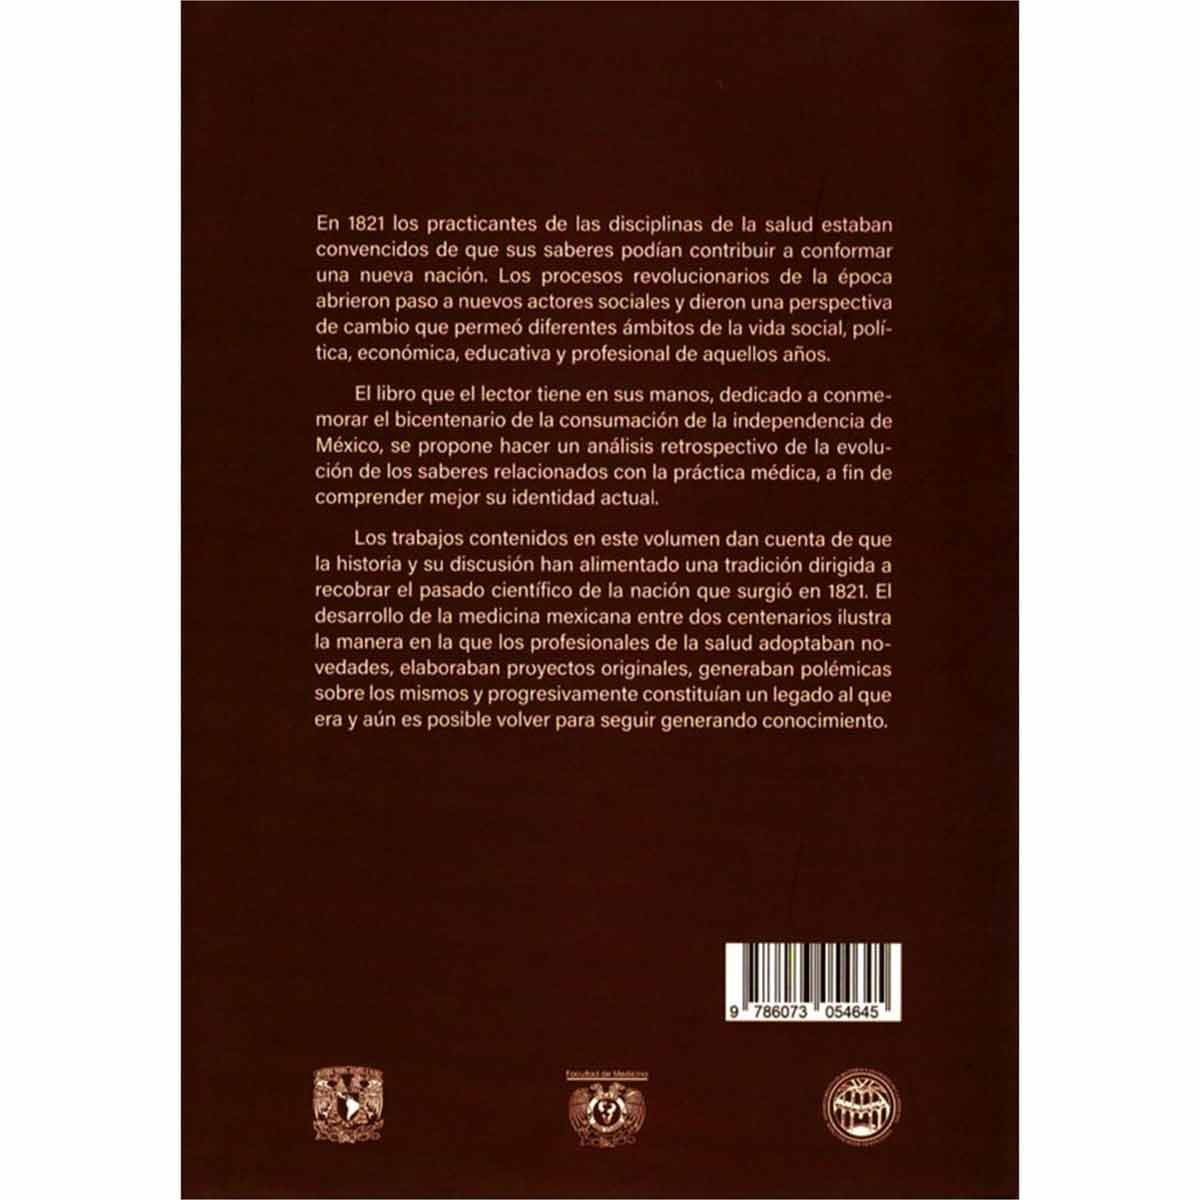 LA MEDICINA MEXICANA EN EL BICENTENARIO, 1821-2021